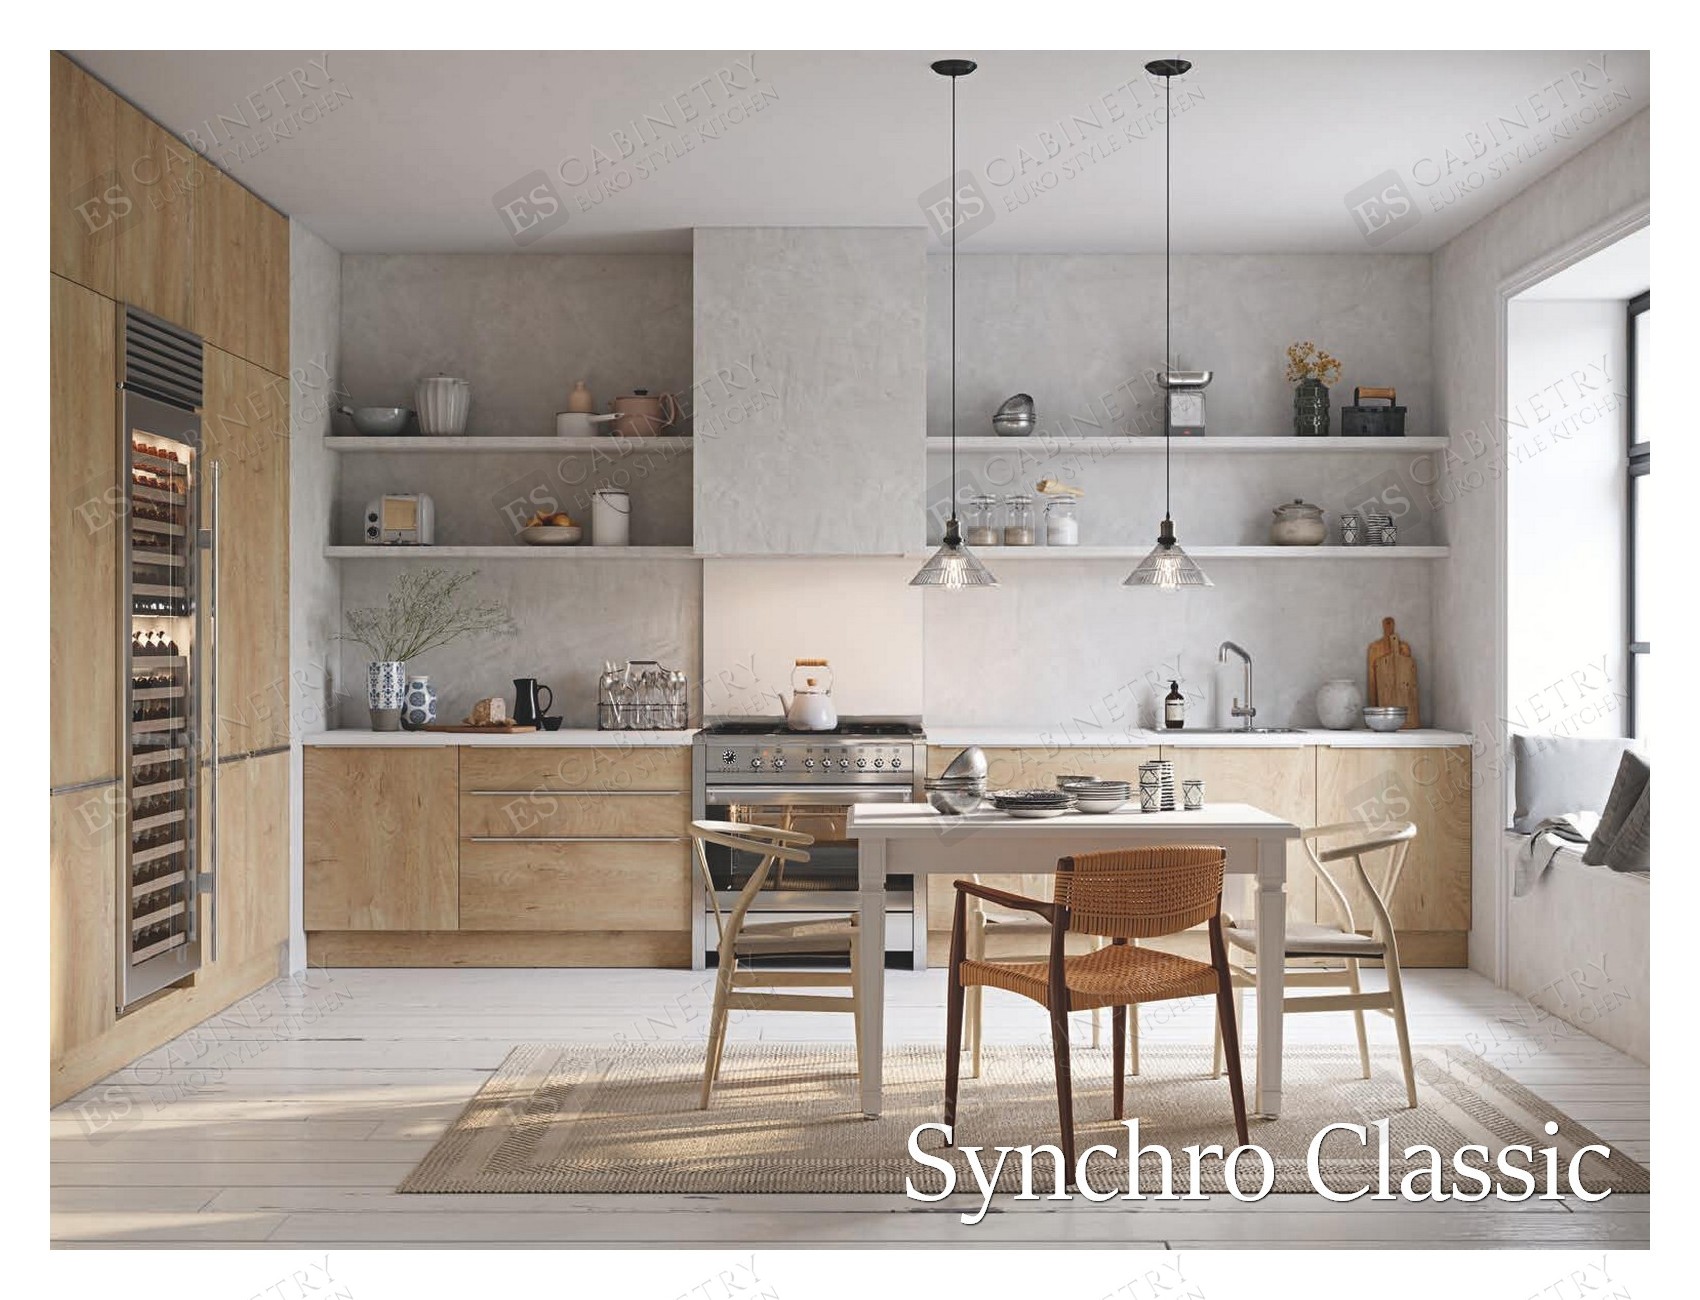 Synchro Classic | European kitchen design